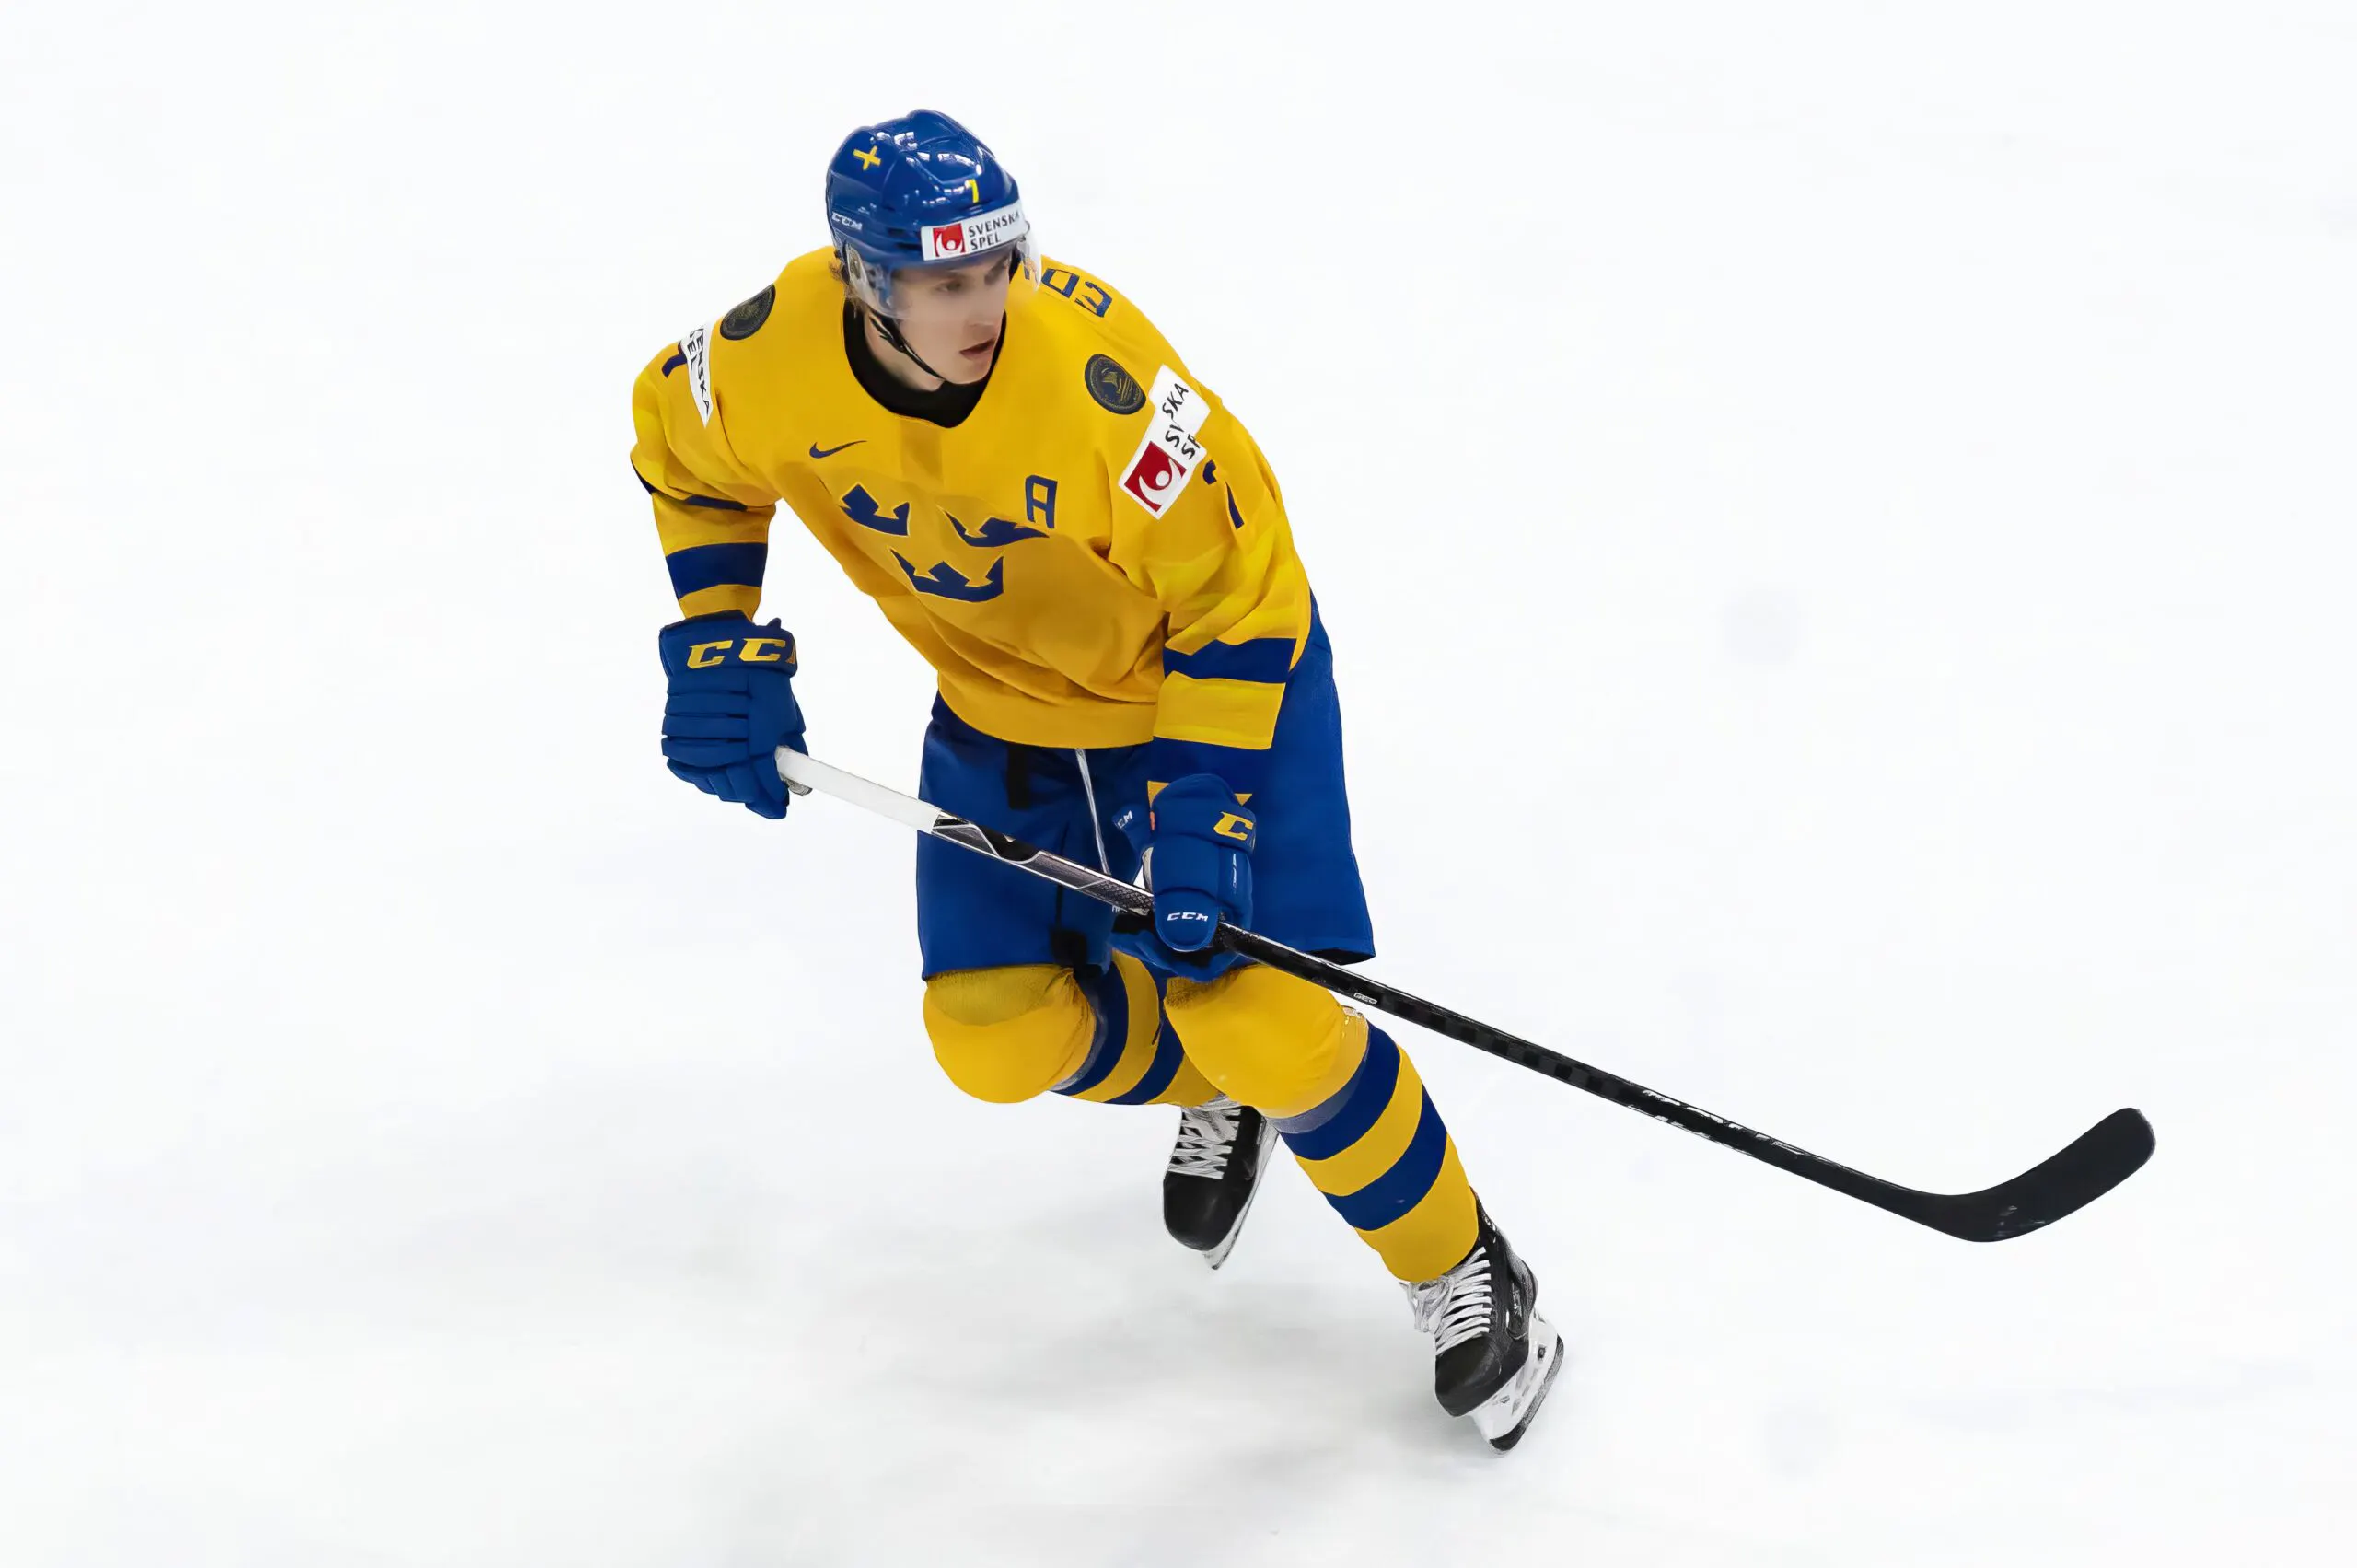 Detroit Red Wings prospect Simon Edvinsson won’t join Sweden for World Junior Championship